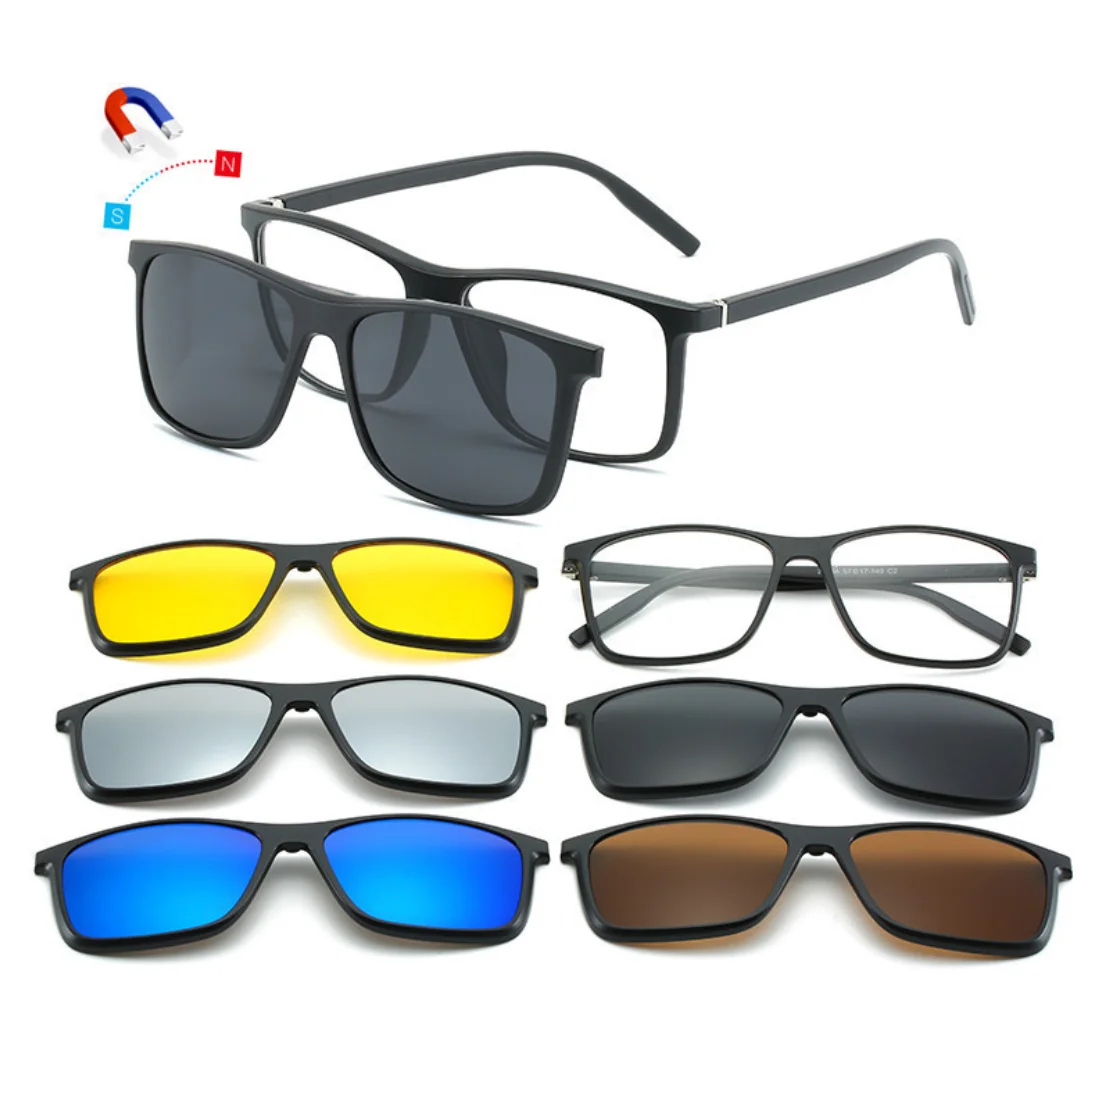 

2021 New 5 in 1 Magnet Eyeglasses Frames Interchange Lenses Sunglass Magnetic Polarized Clip On Glasses